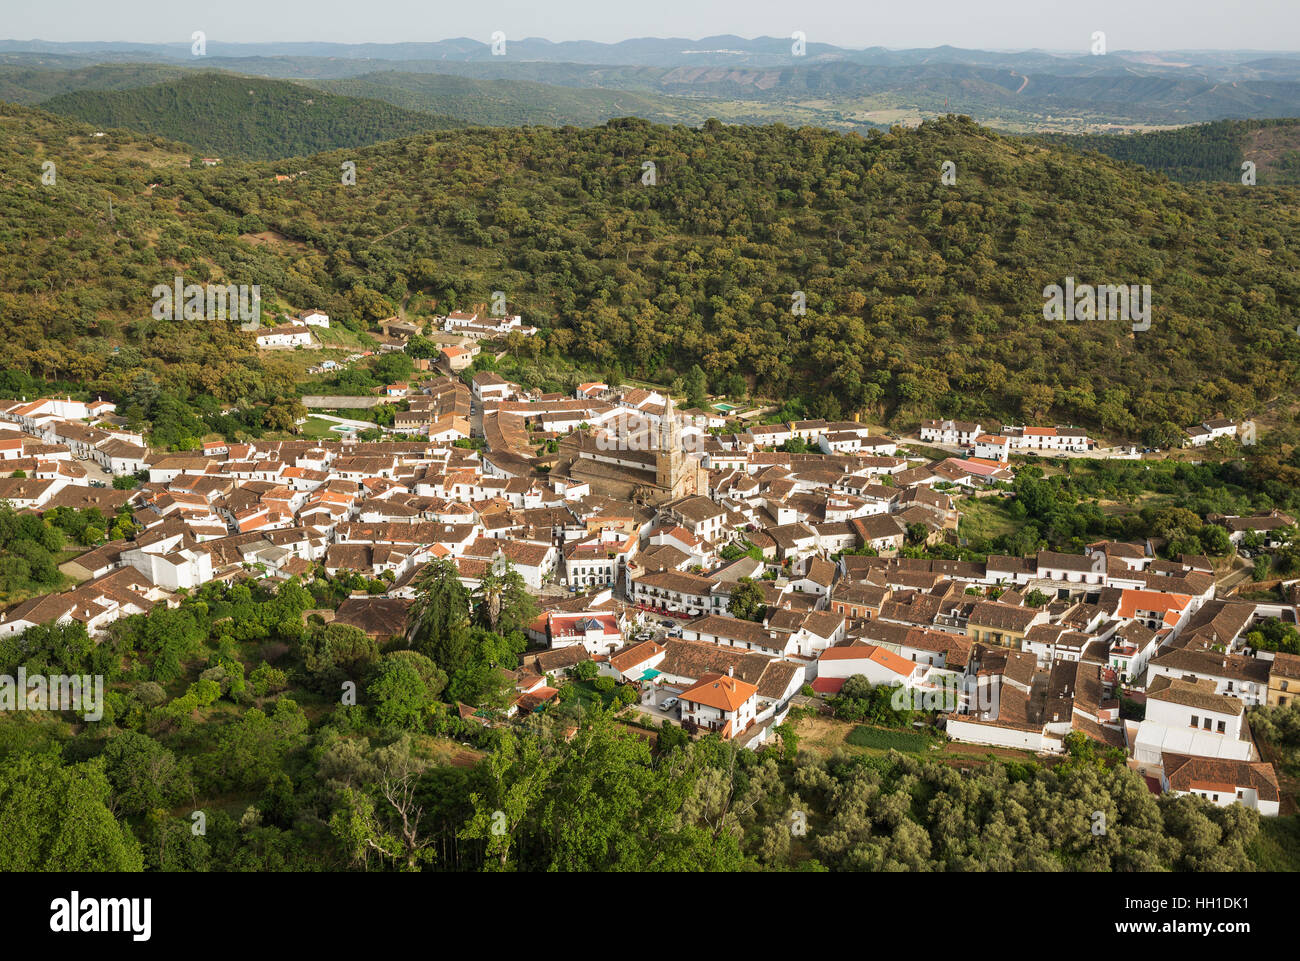 Village Alajar, Sierra de Aracena, Huelva province, Andalusia, Spain Stock Photo